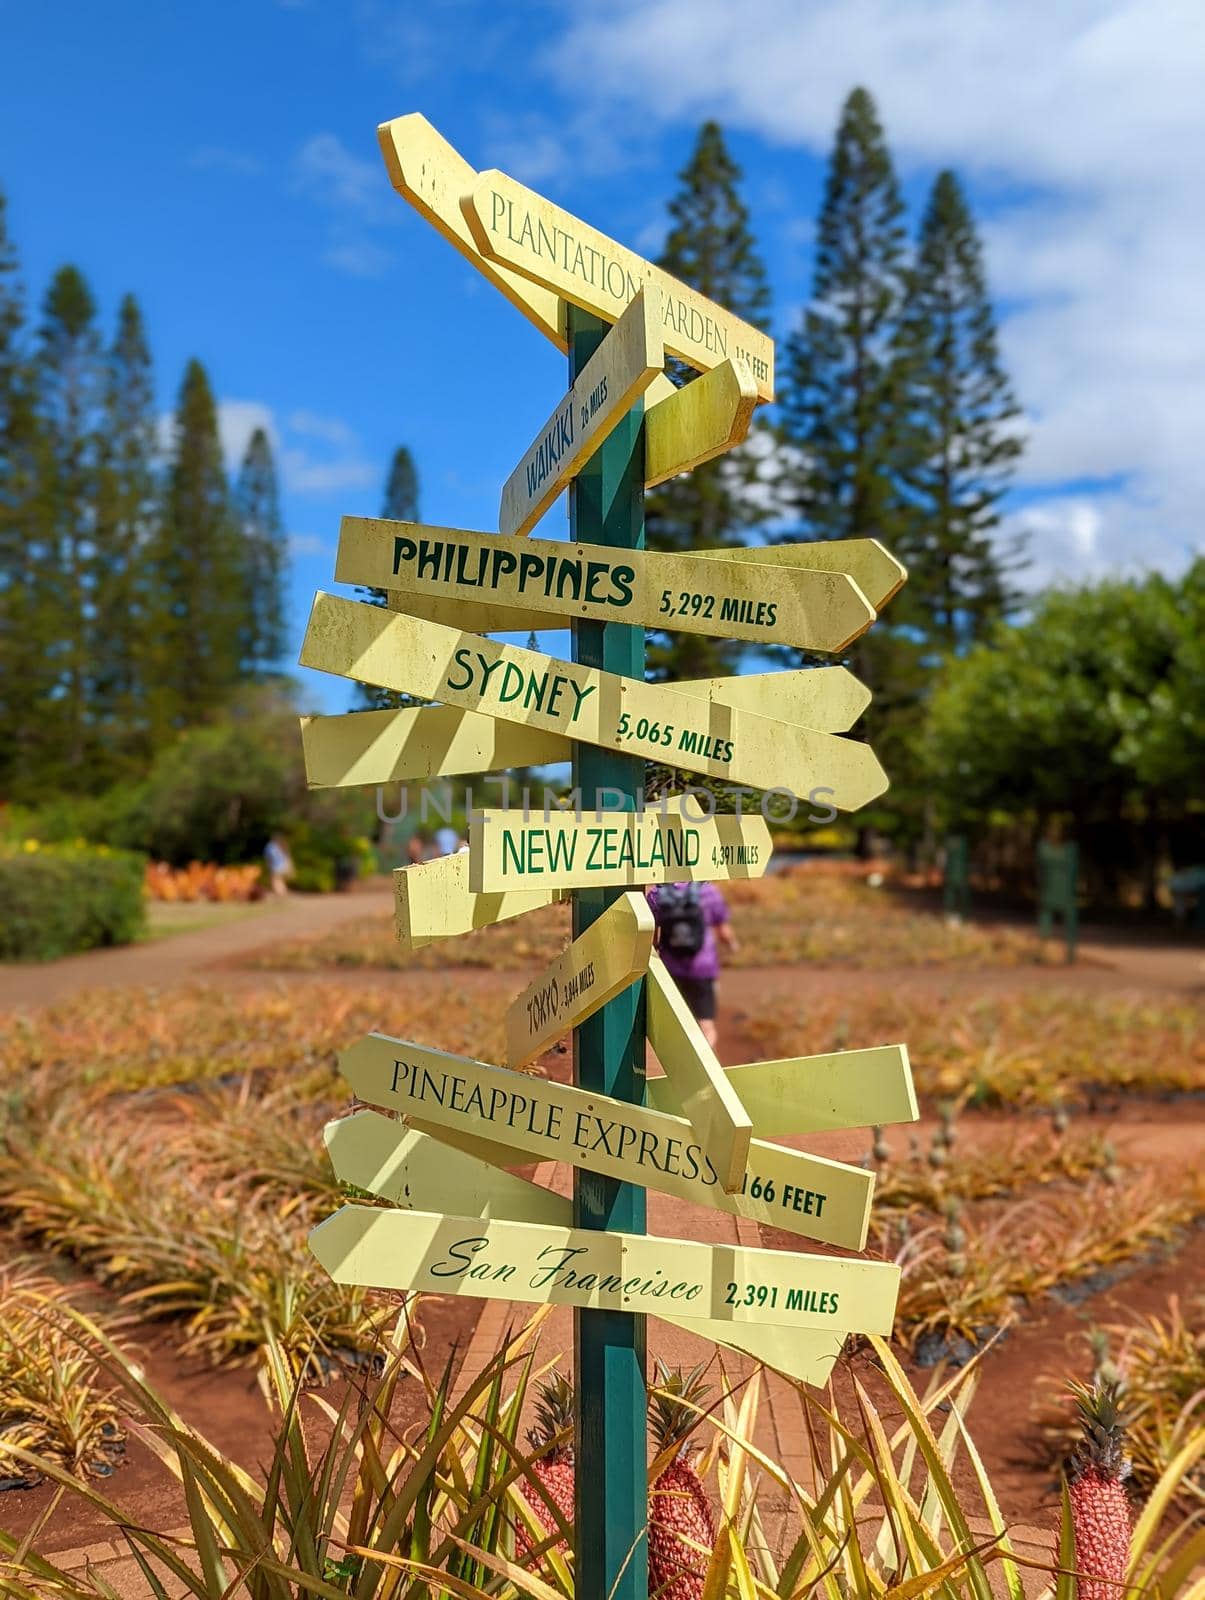 Dole pineapple plantation in Wahiawa, Oahu, Hawaii, USA by digidreamgrafix